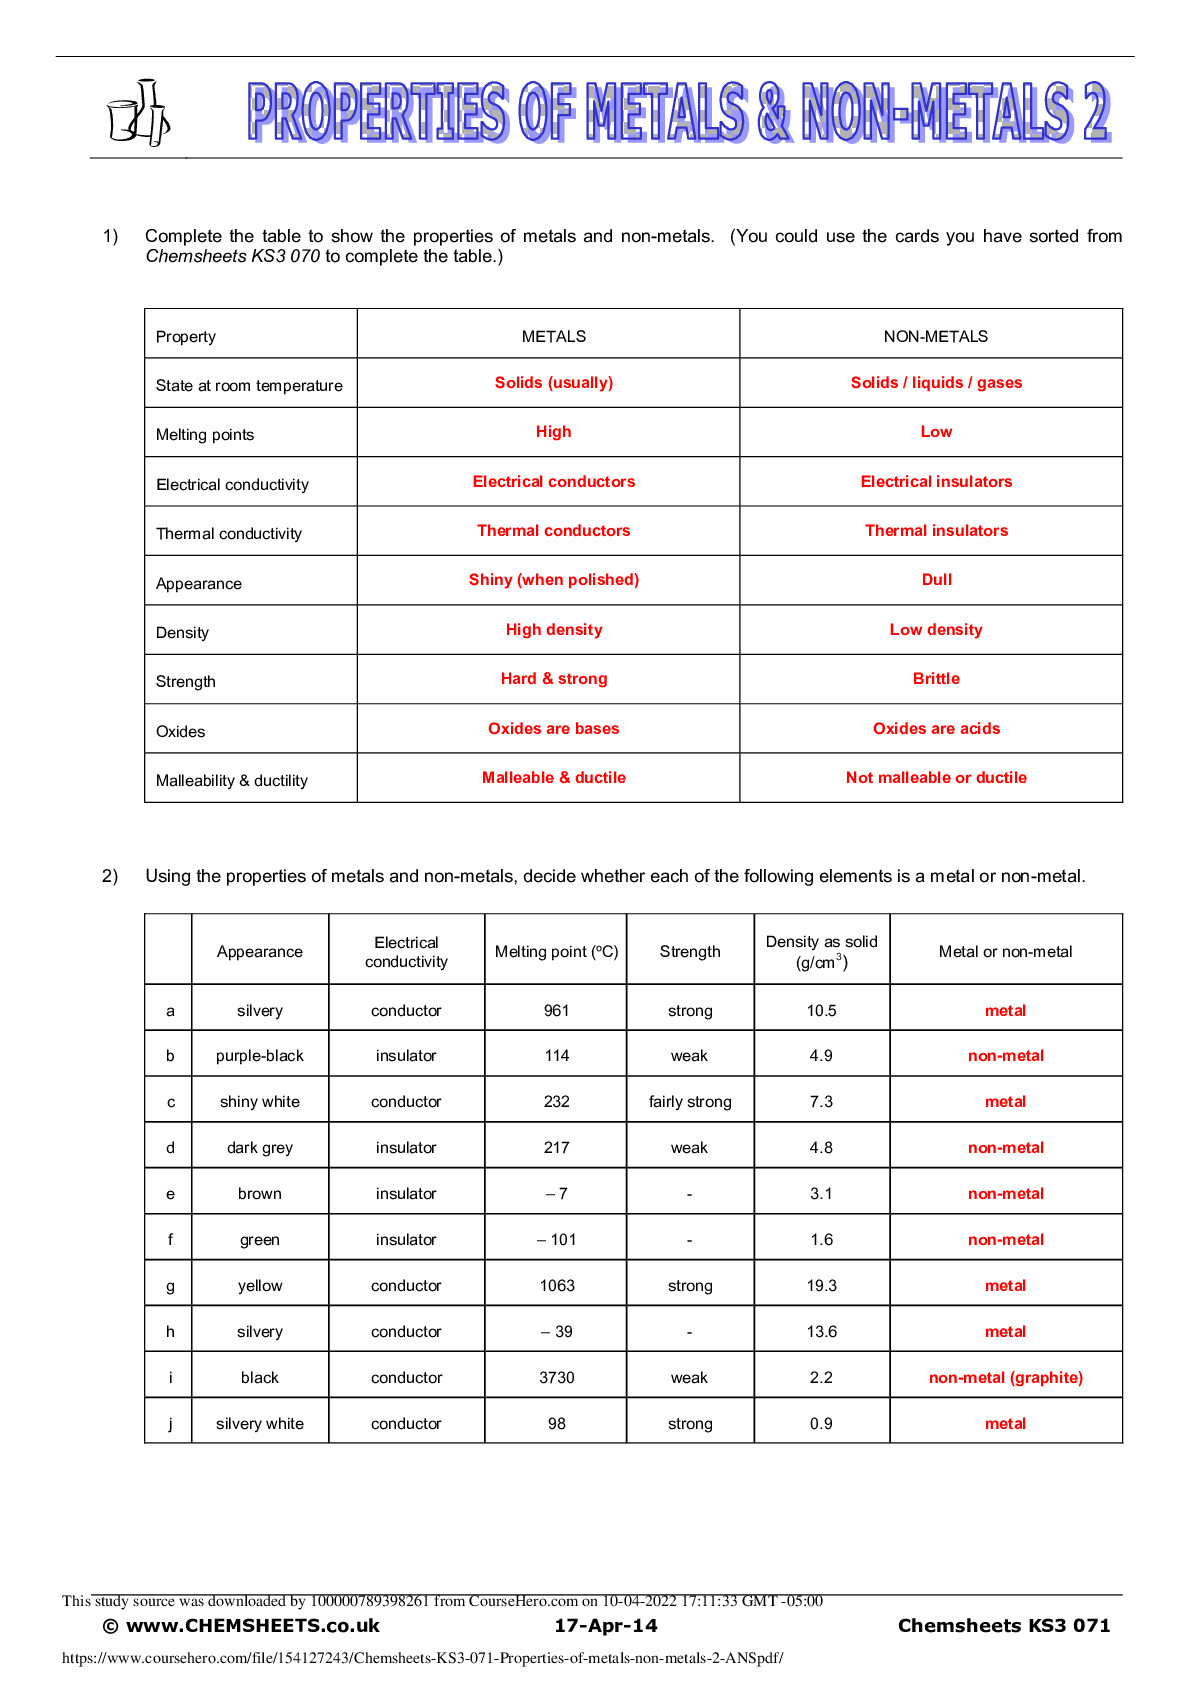 Chemsheets_KS3_071_Properties_of_metals_non_metals_2_ANS.pdf